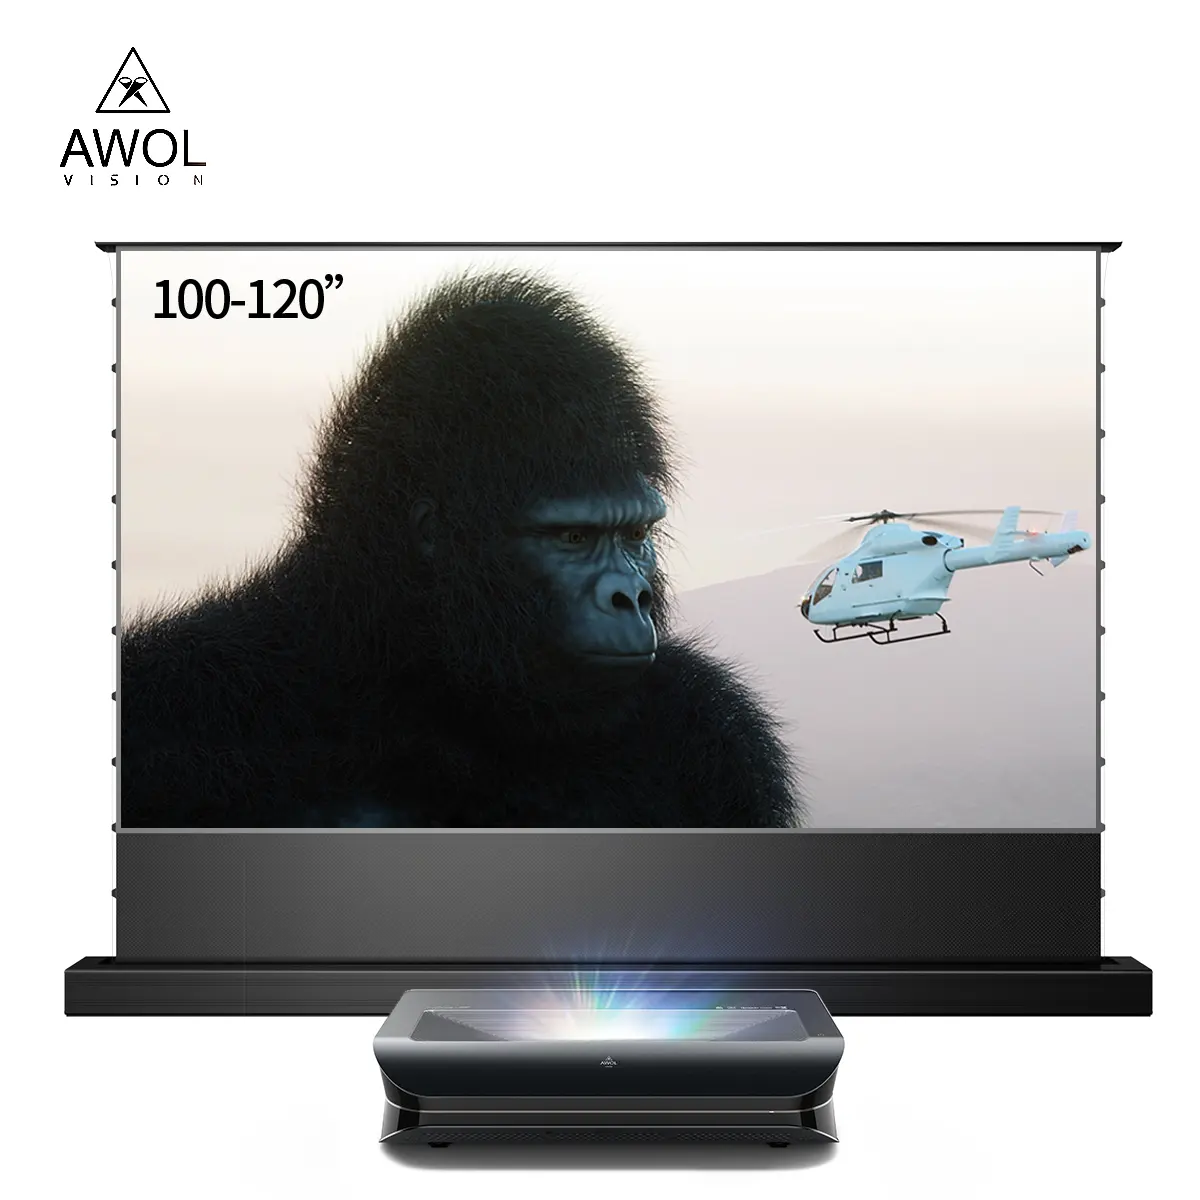 AWOL 비전 LTV 3000 프로 150 "U스트 3D 안드로이드 프로젝터 uhd 4k 시네마 비디오 홈 시어터 울트라 짧은 던지기 레이저 프로젝터